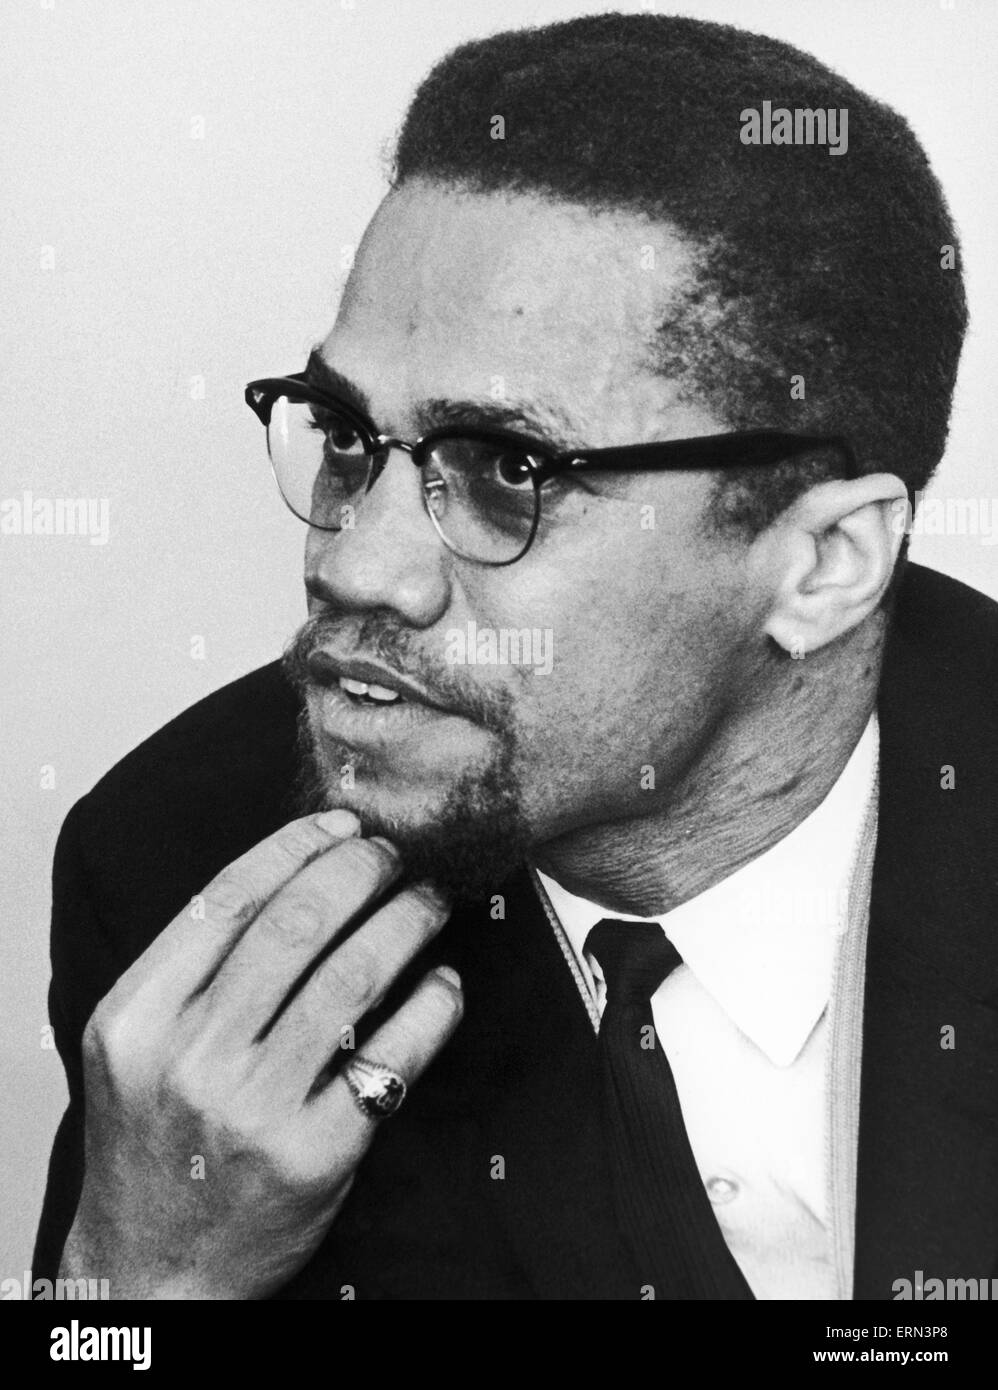 Malcolm X musulmani afro-americano ministro e attivista per i diritti umani si vede qui poco dopo la sua visita a Marshall Street in Smethwick. L'attivista per i diritti umani ha visitato Smethwick, vicino a Birmingham, che era diventato un sinonimo per la divisione razziale seguenti Foto Stock